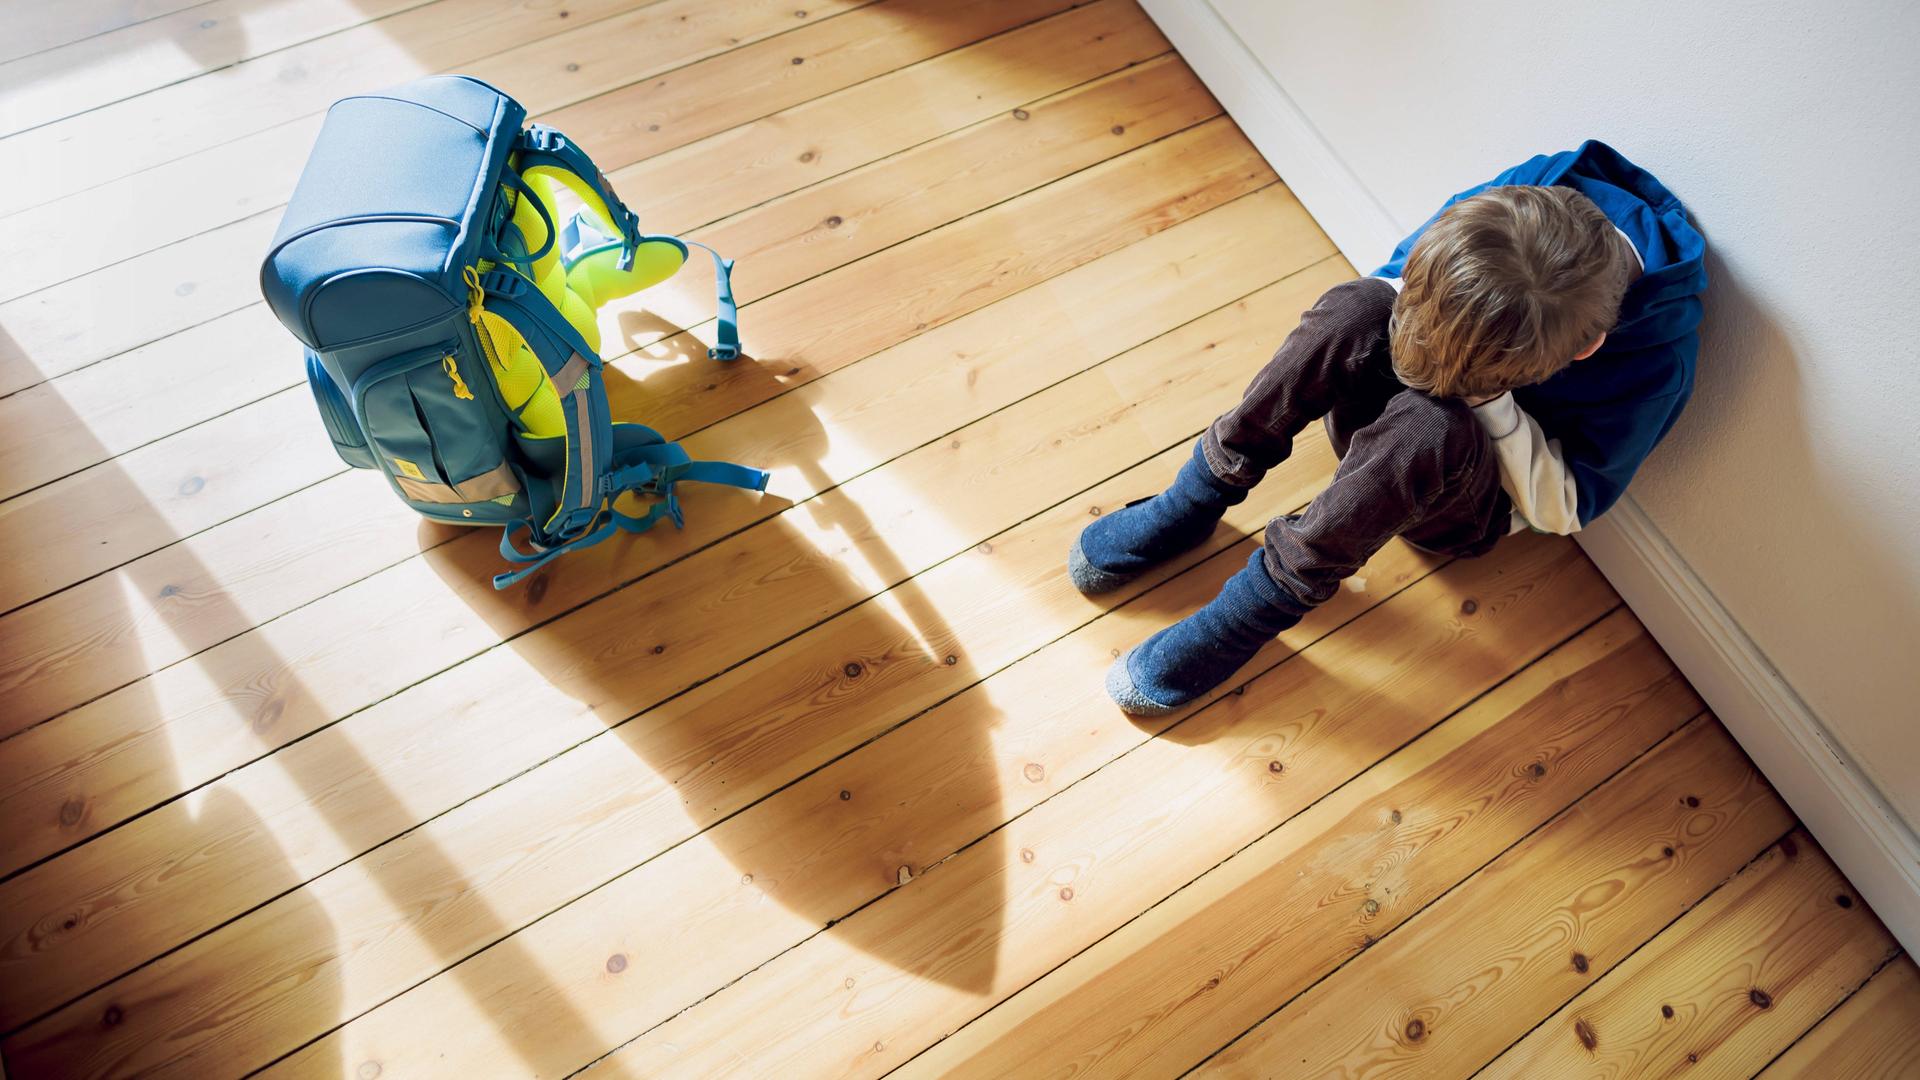 Ein Kind sitzt auf dem hölzernen Fußboden, die Beine angewinkelt, das Gesicht in den Händen vergraben. Neben ihm steht der Schulranzen. Er wirft einen langen Schatten auf den Boden.